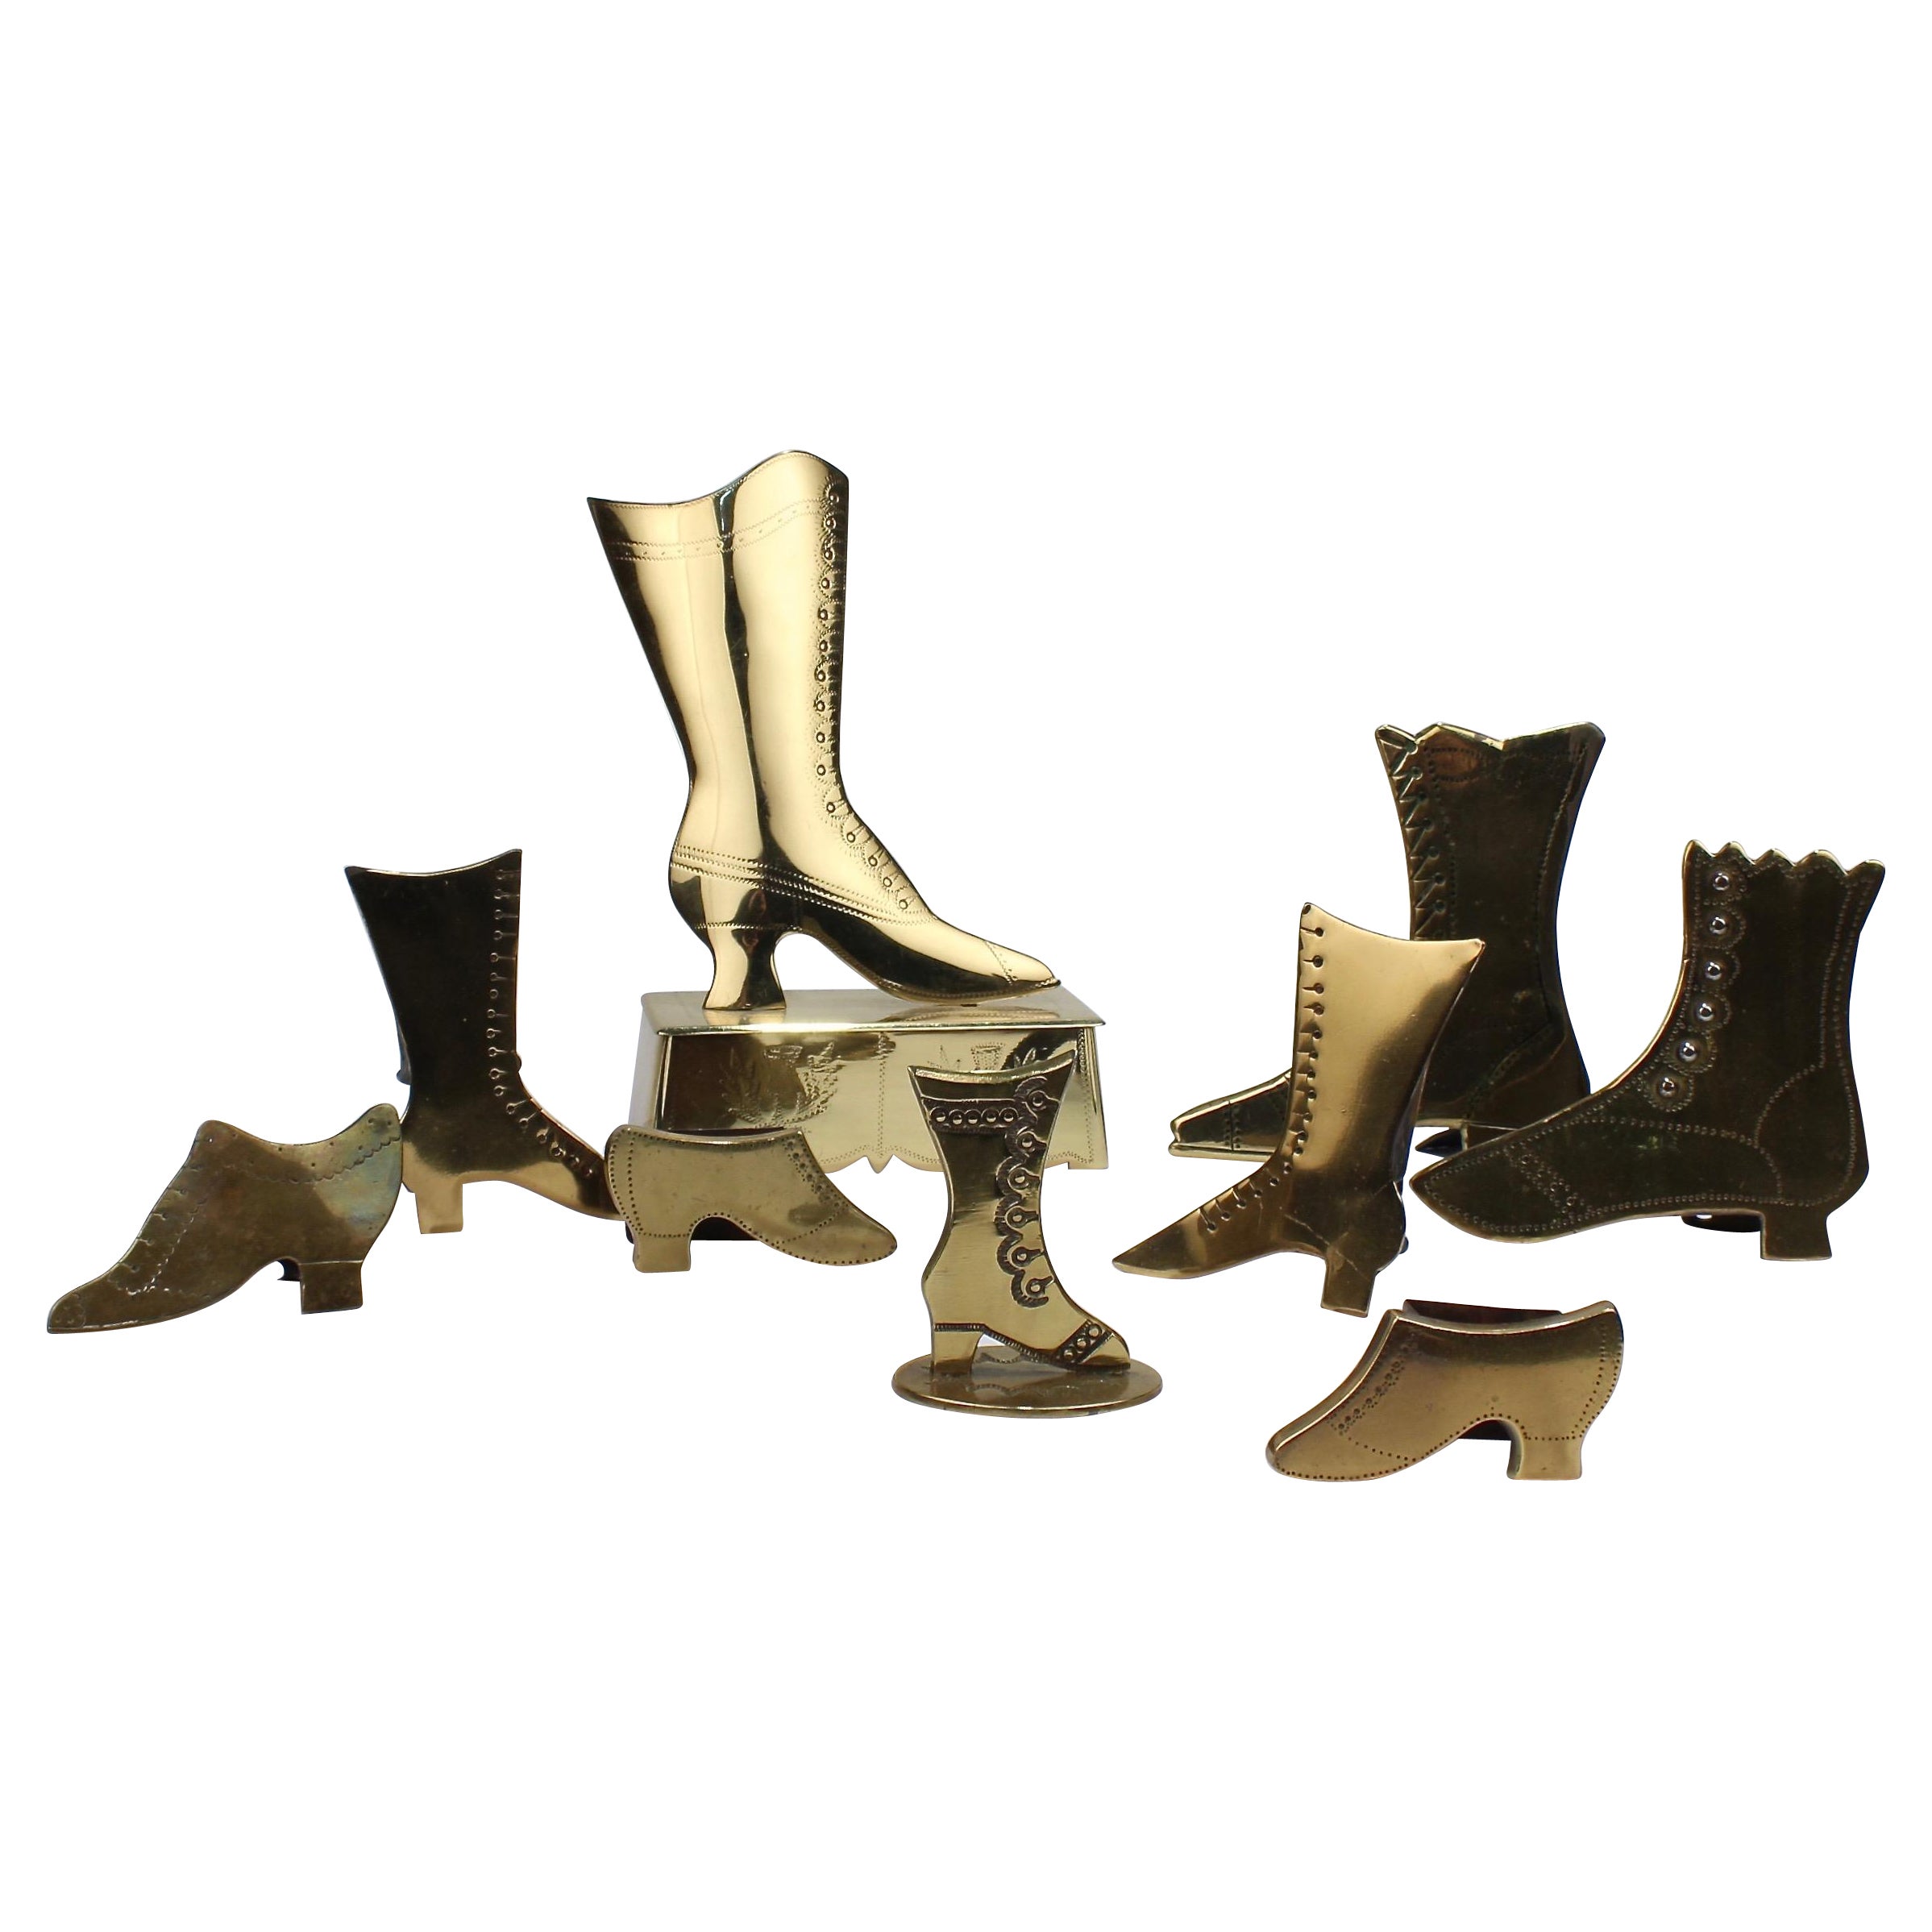 Sammlung von 9 volkstümlichen englischen viktorianischen Messing-Schuh und Stiefel Mantel Ornamente